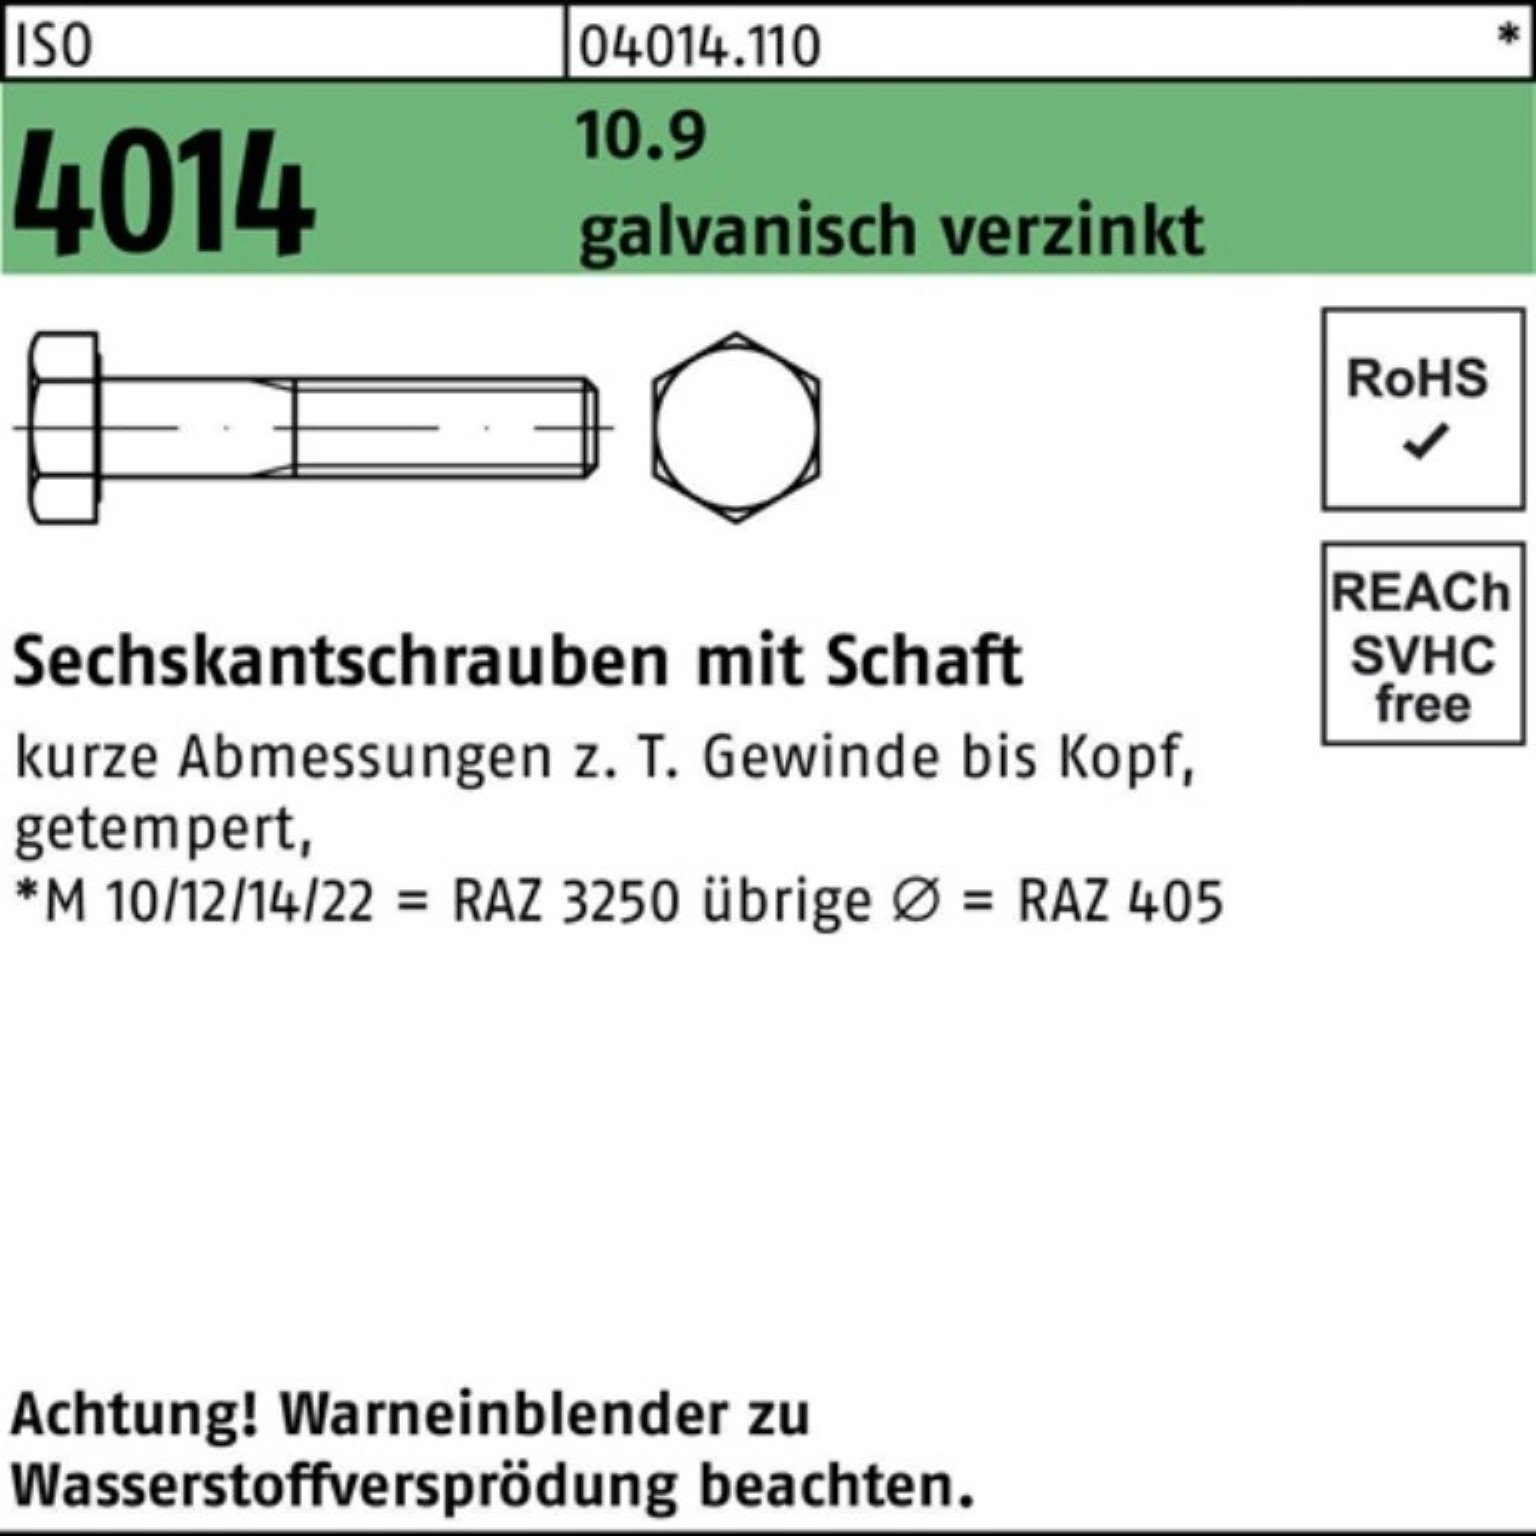 Sechskantschraube Sechskantschraube 120 galv.verz. 4014 ISO 10.9 Pack 100er Bufab M10x Schaft